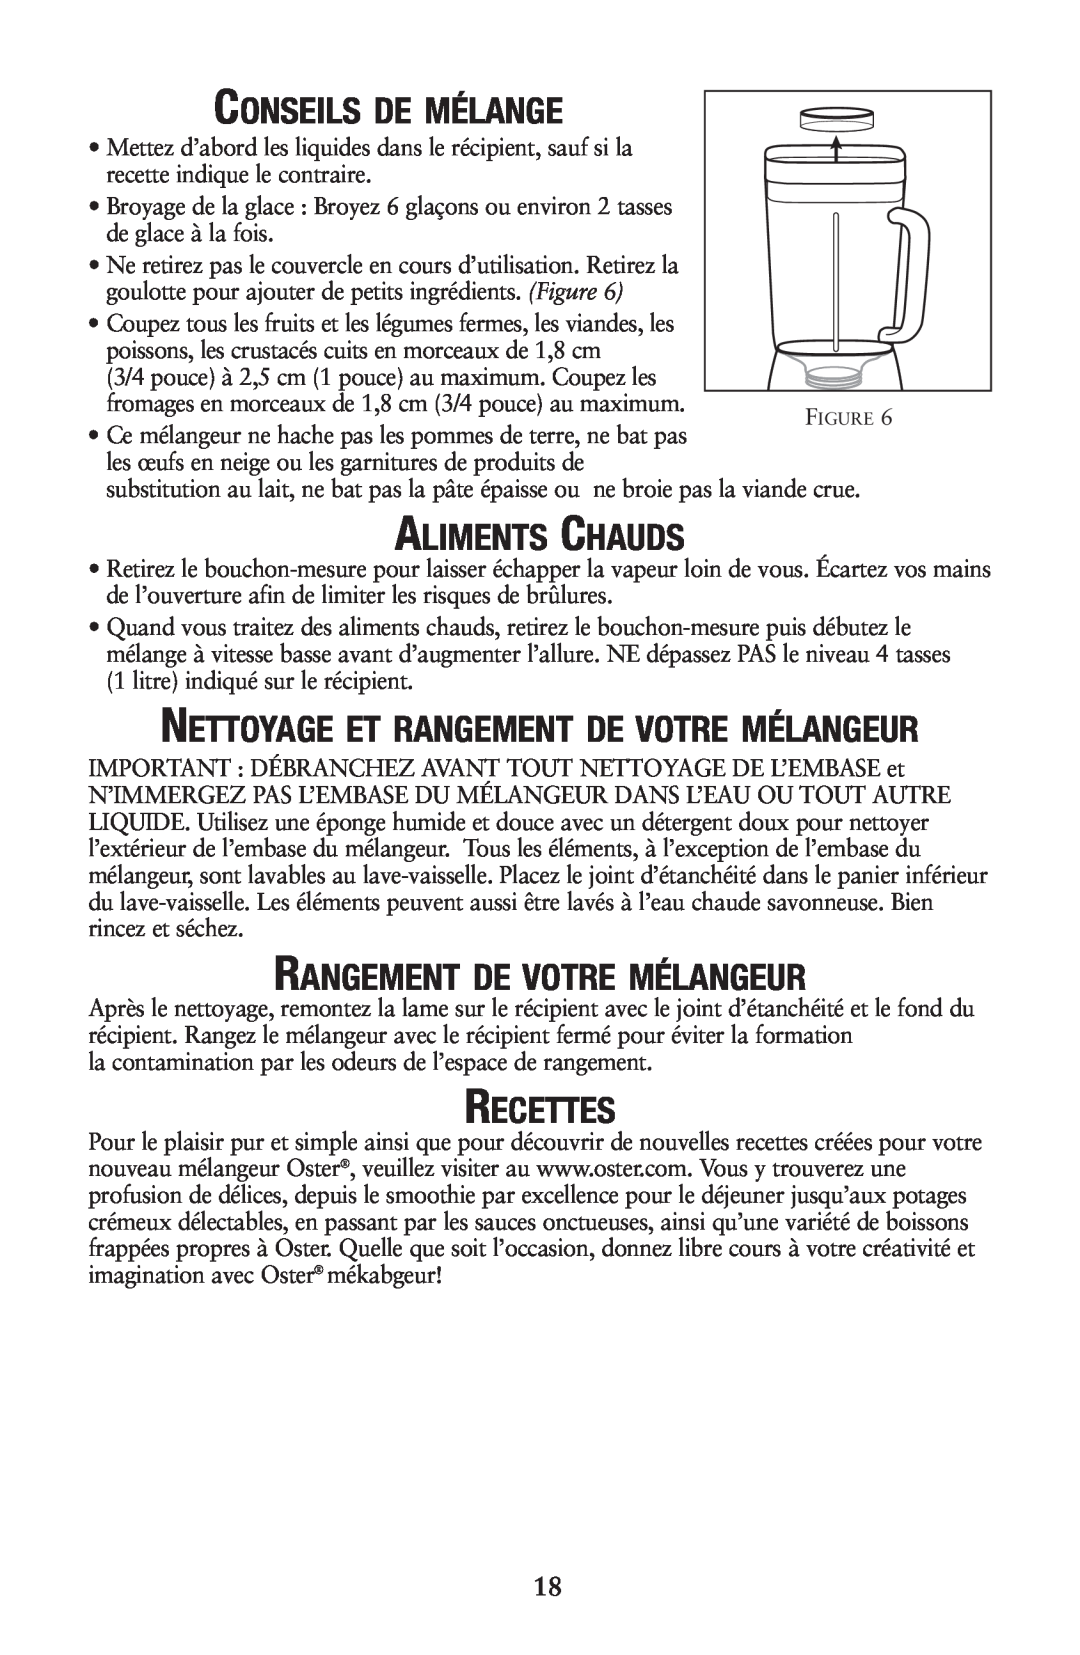 Oster P.N. 133086 user manual Conseils De Mélange, Aliments Chauds, Rangement De Votre Mélangeur, Recettes 